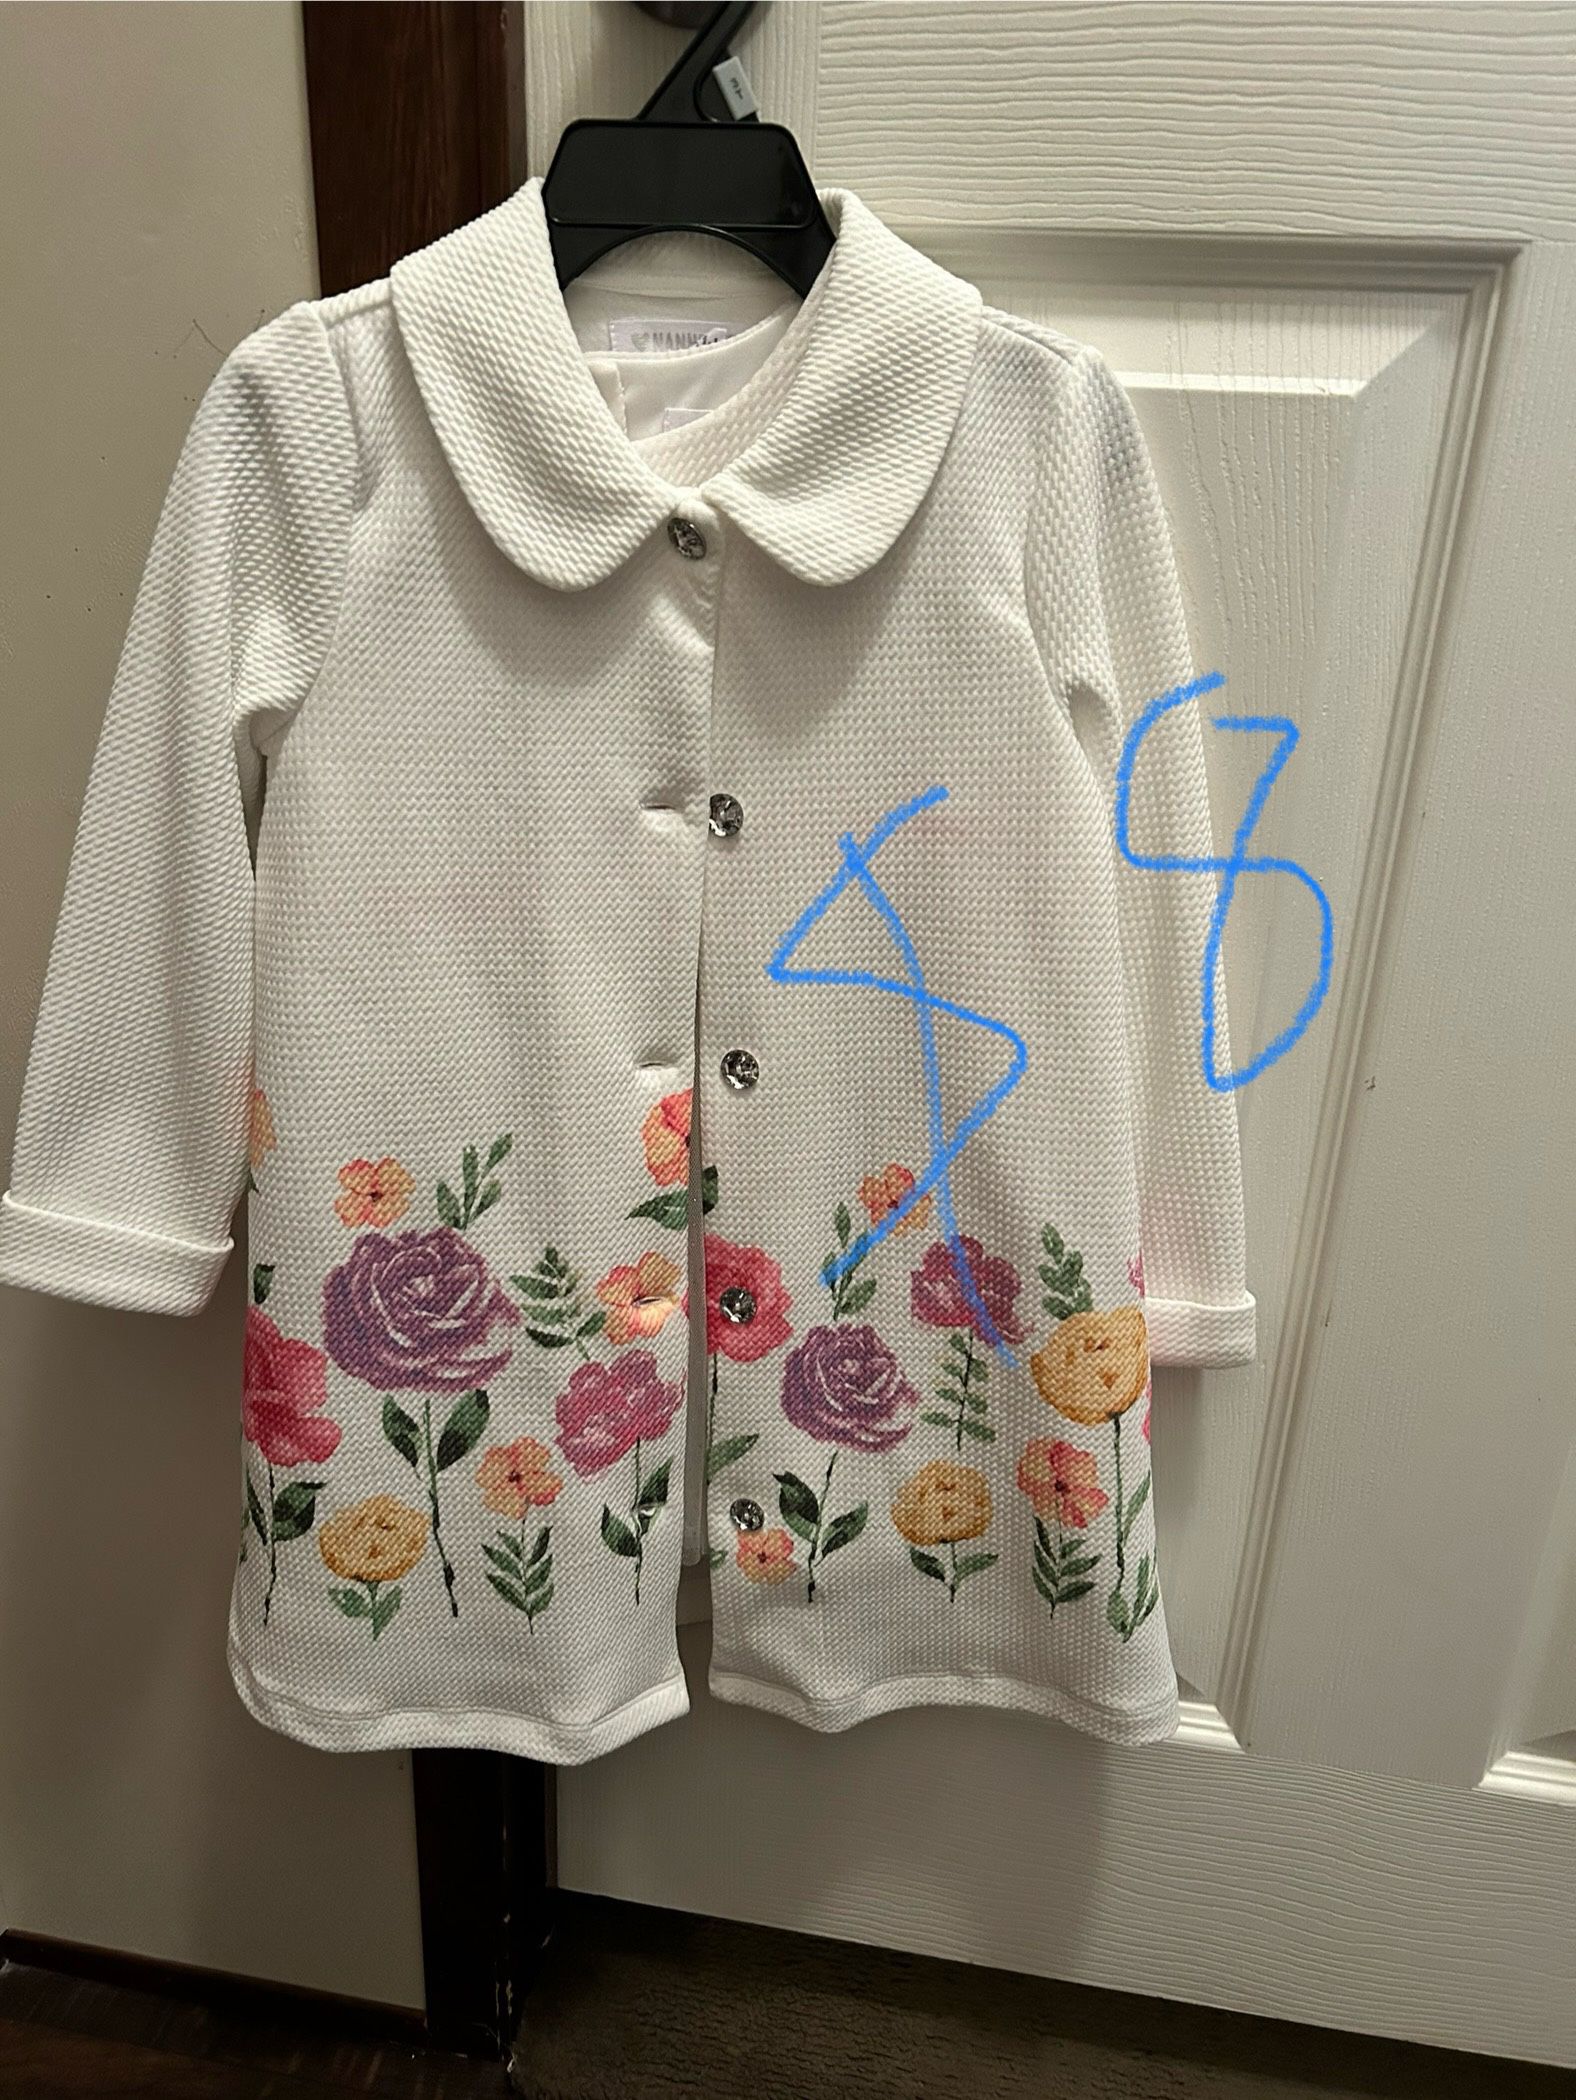 Toddler Girl Dress Matching Jacket 